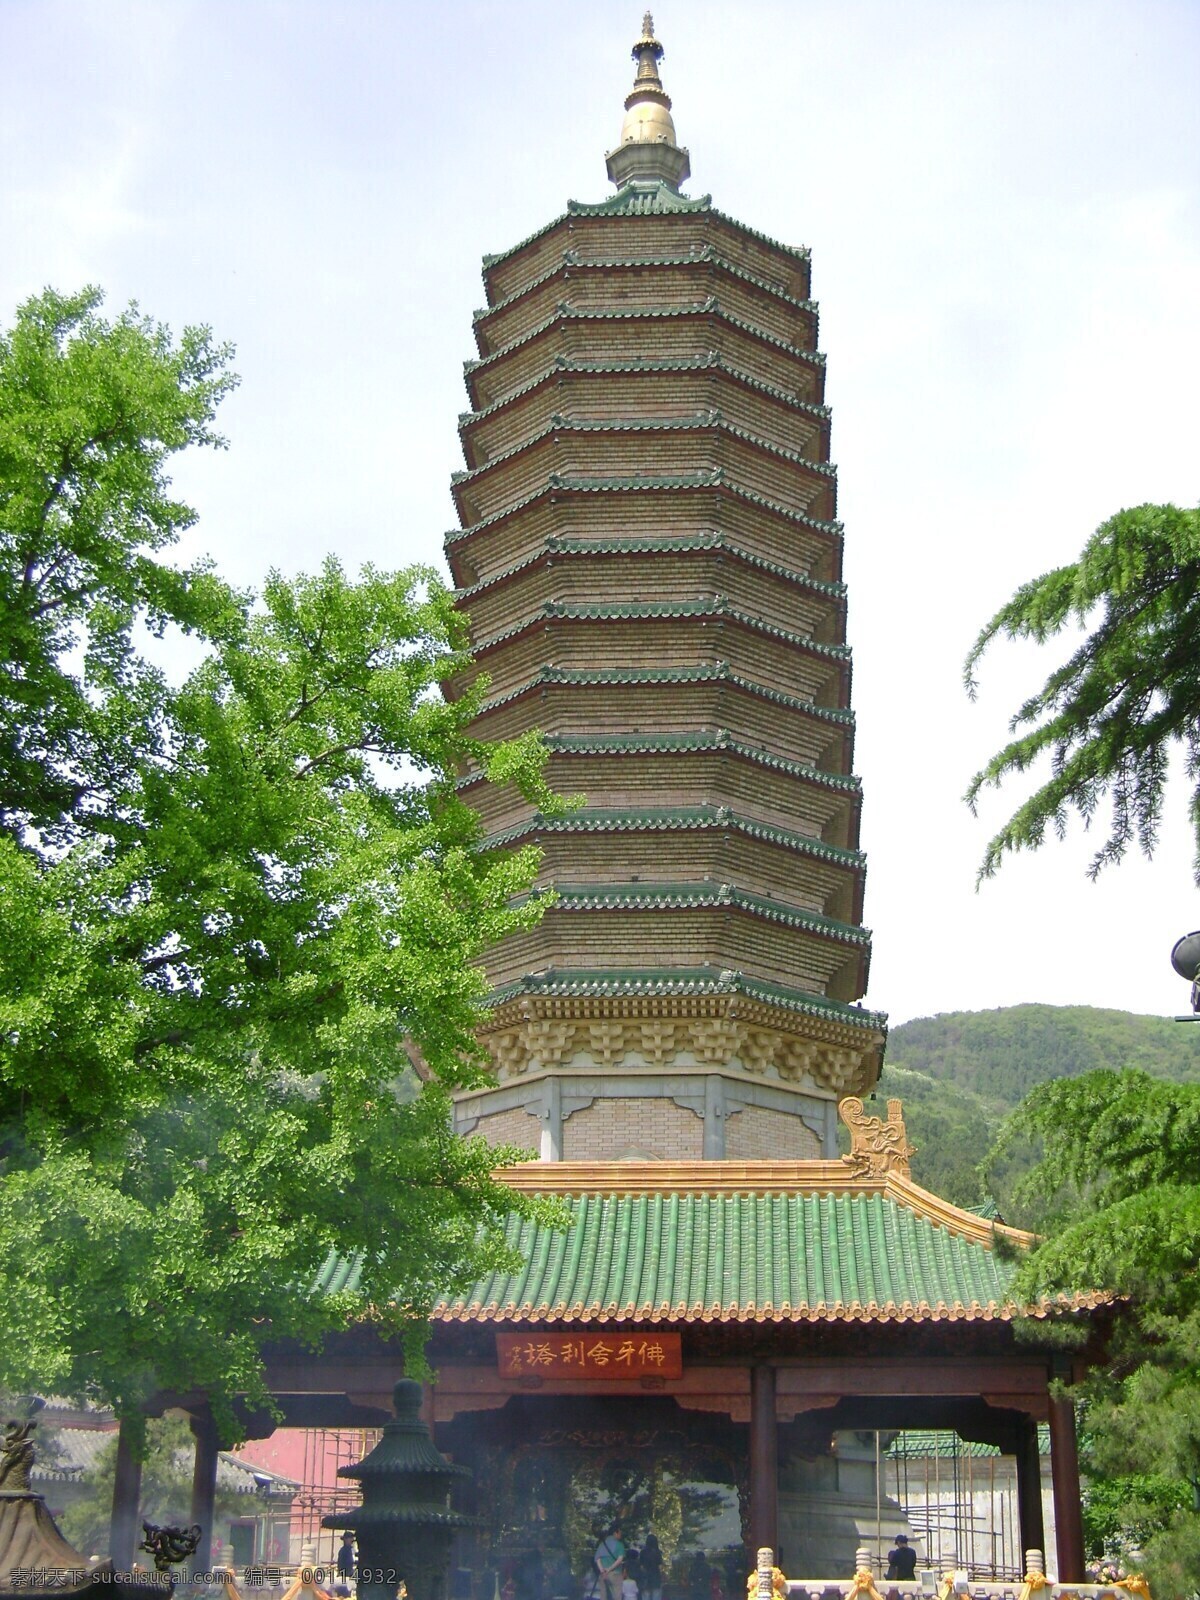 佛牙 舍利塔 全貌 北京旅游 佛牙舍利塔 八大处 藏传佛教圣地 历史悠久 风景 生活 旅游餐饮